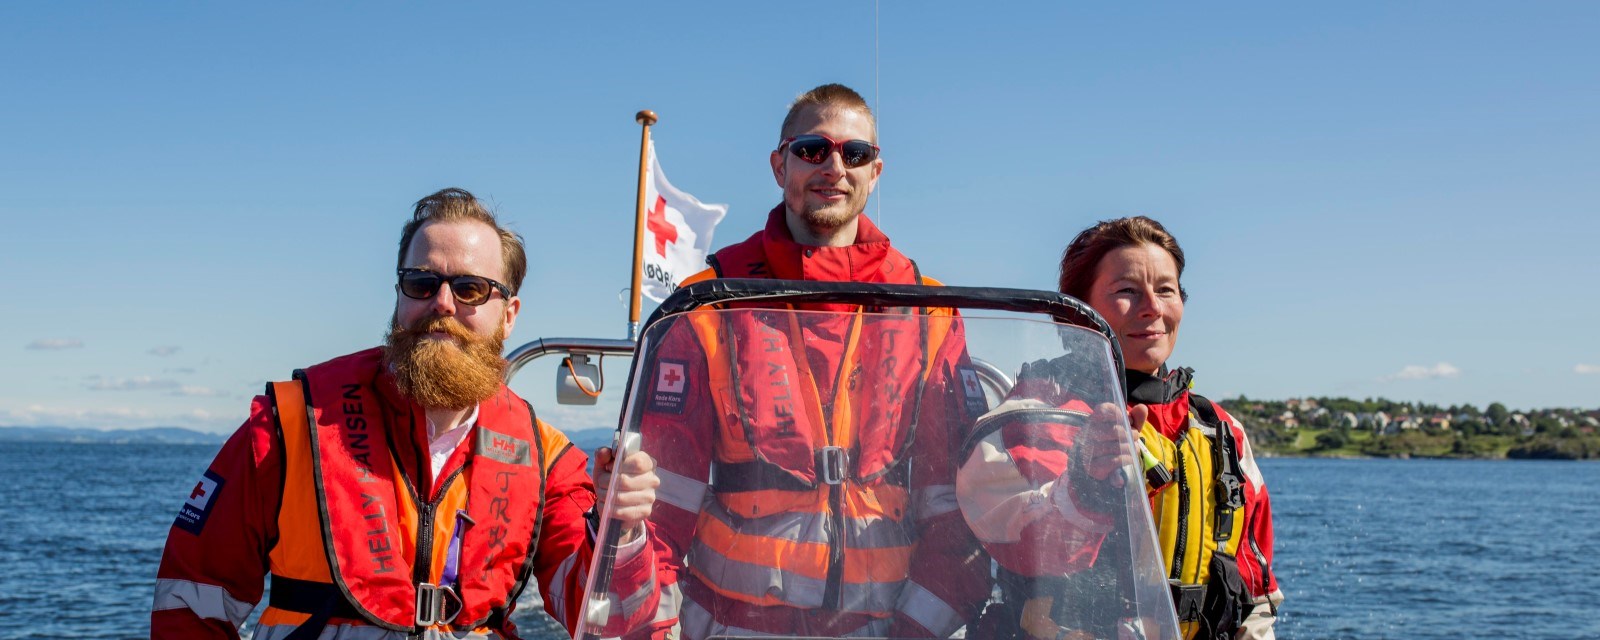 Tre hjelpekorpsere til sjøs med vind i skjegget, uniformer og - selvfølgelig - redningsvest.